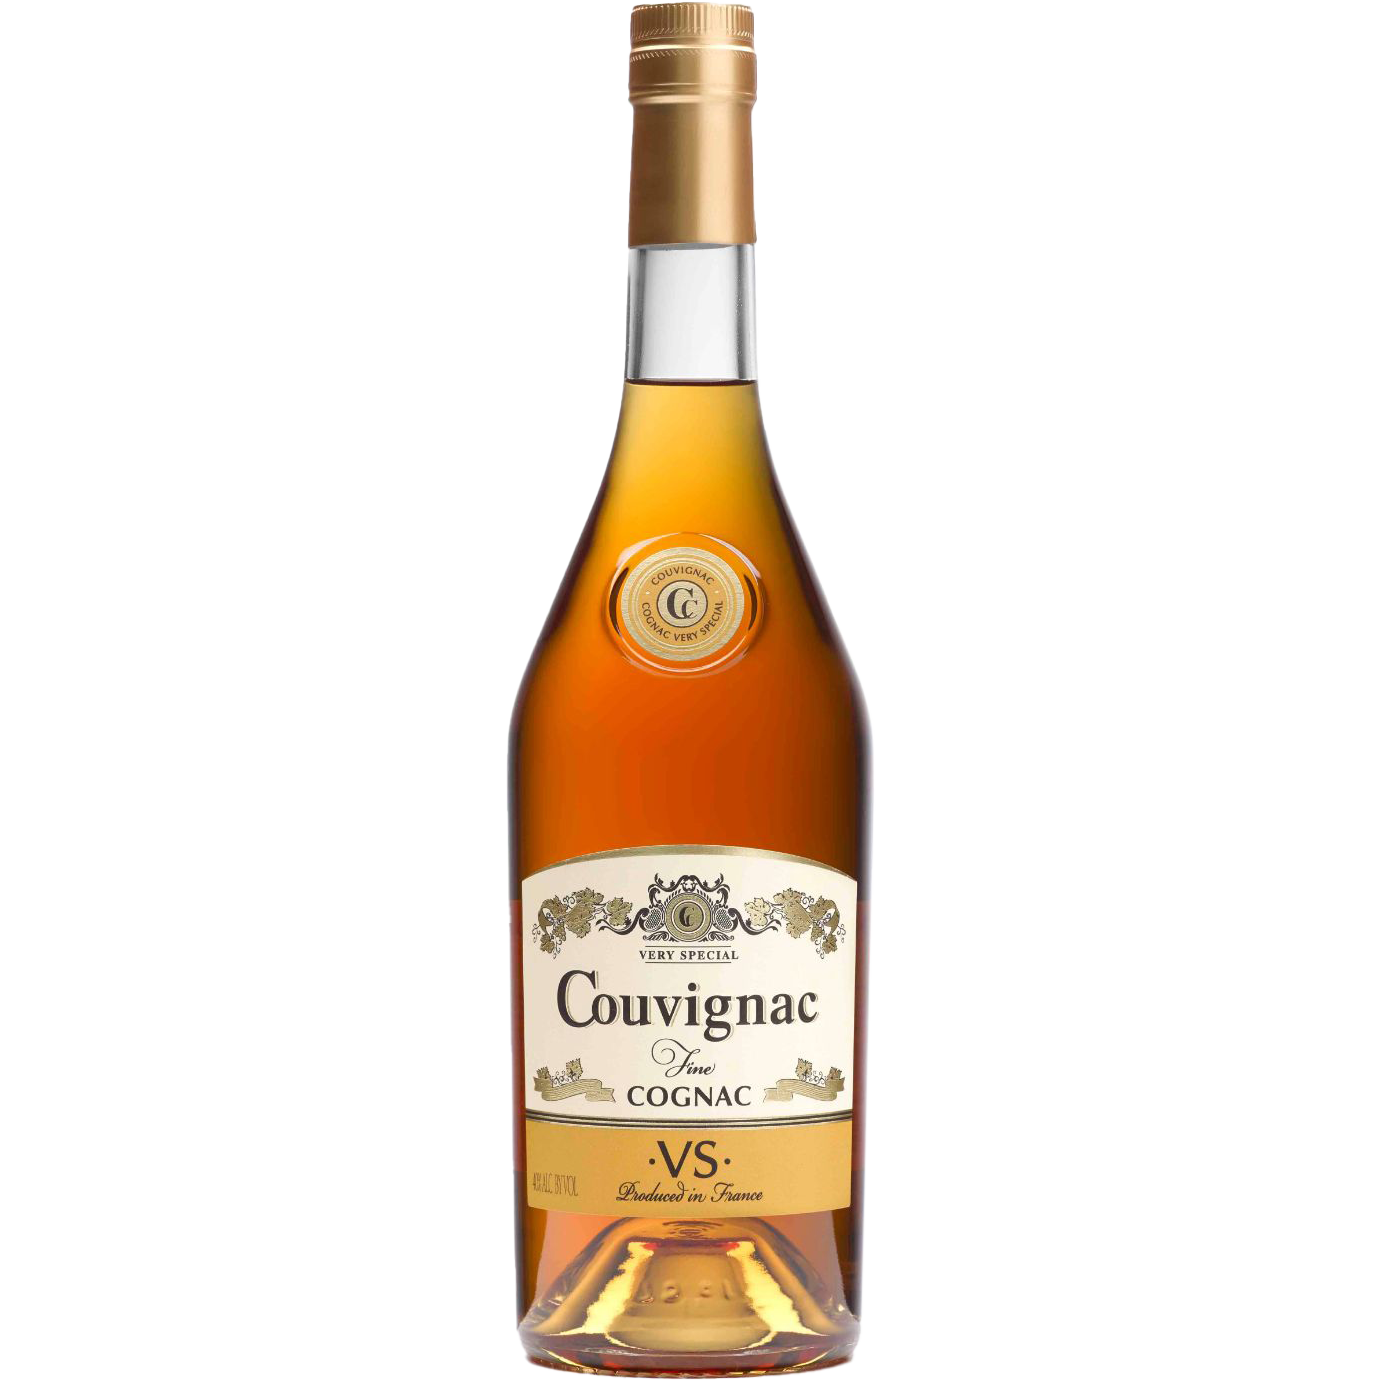 Couvignac V.S. Cognac, France